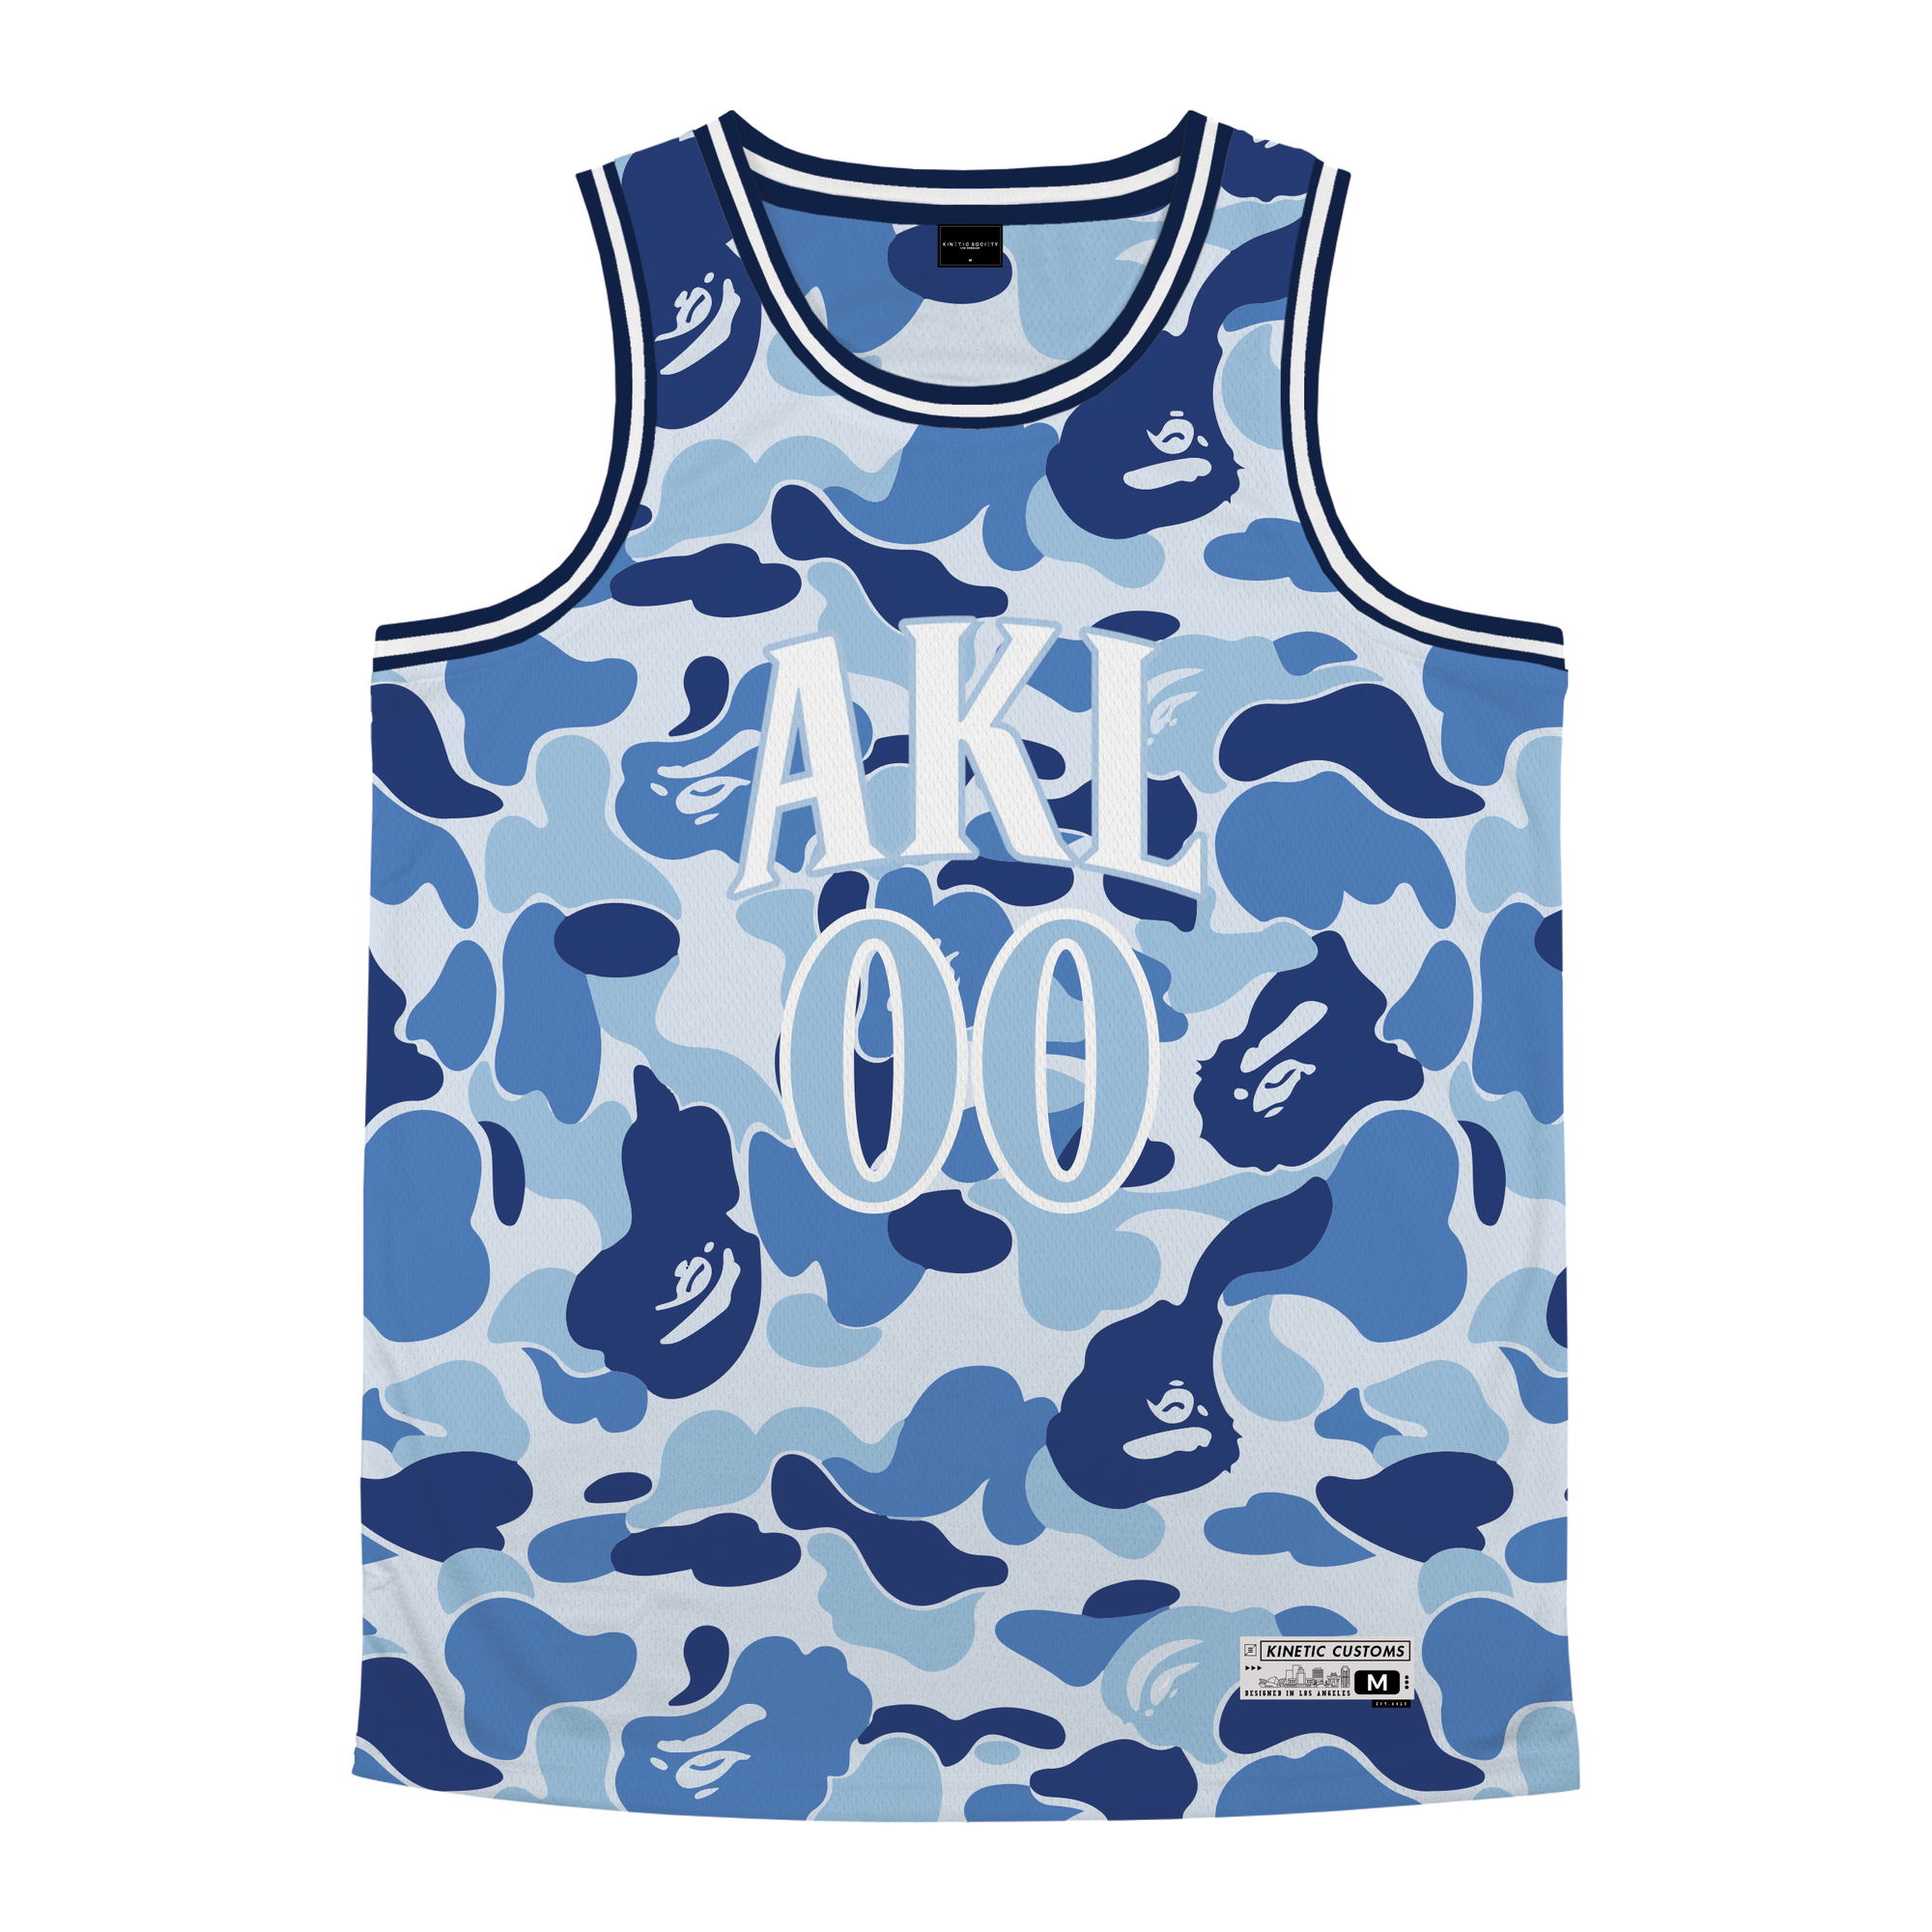 Alpha Kappa Lambda - Blue Camo Basketball Jersey